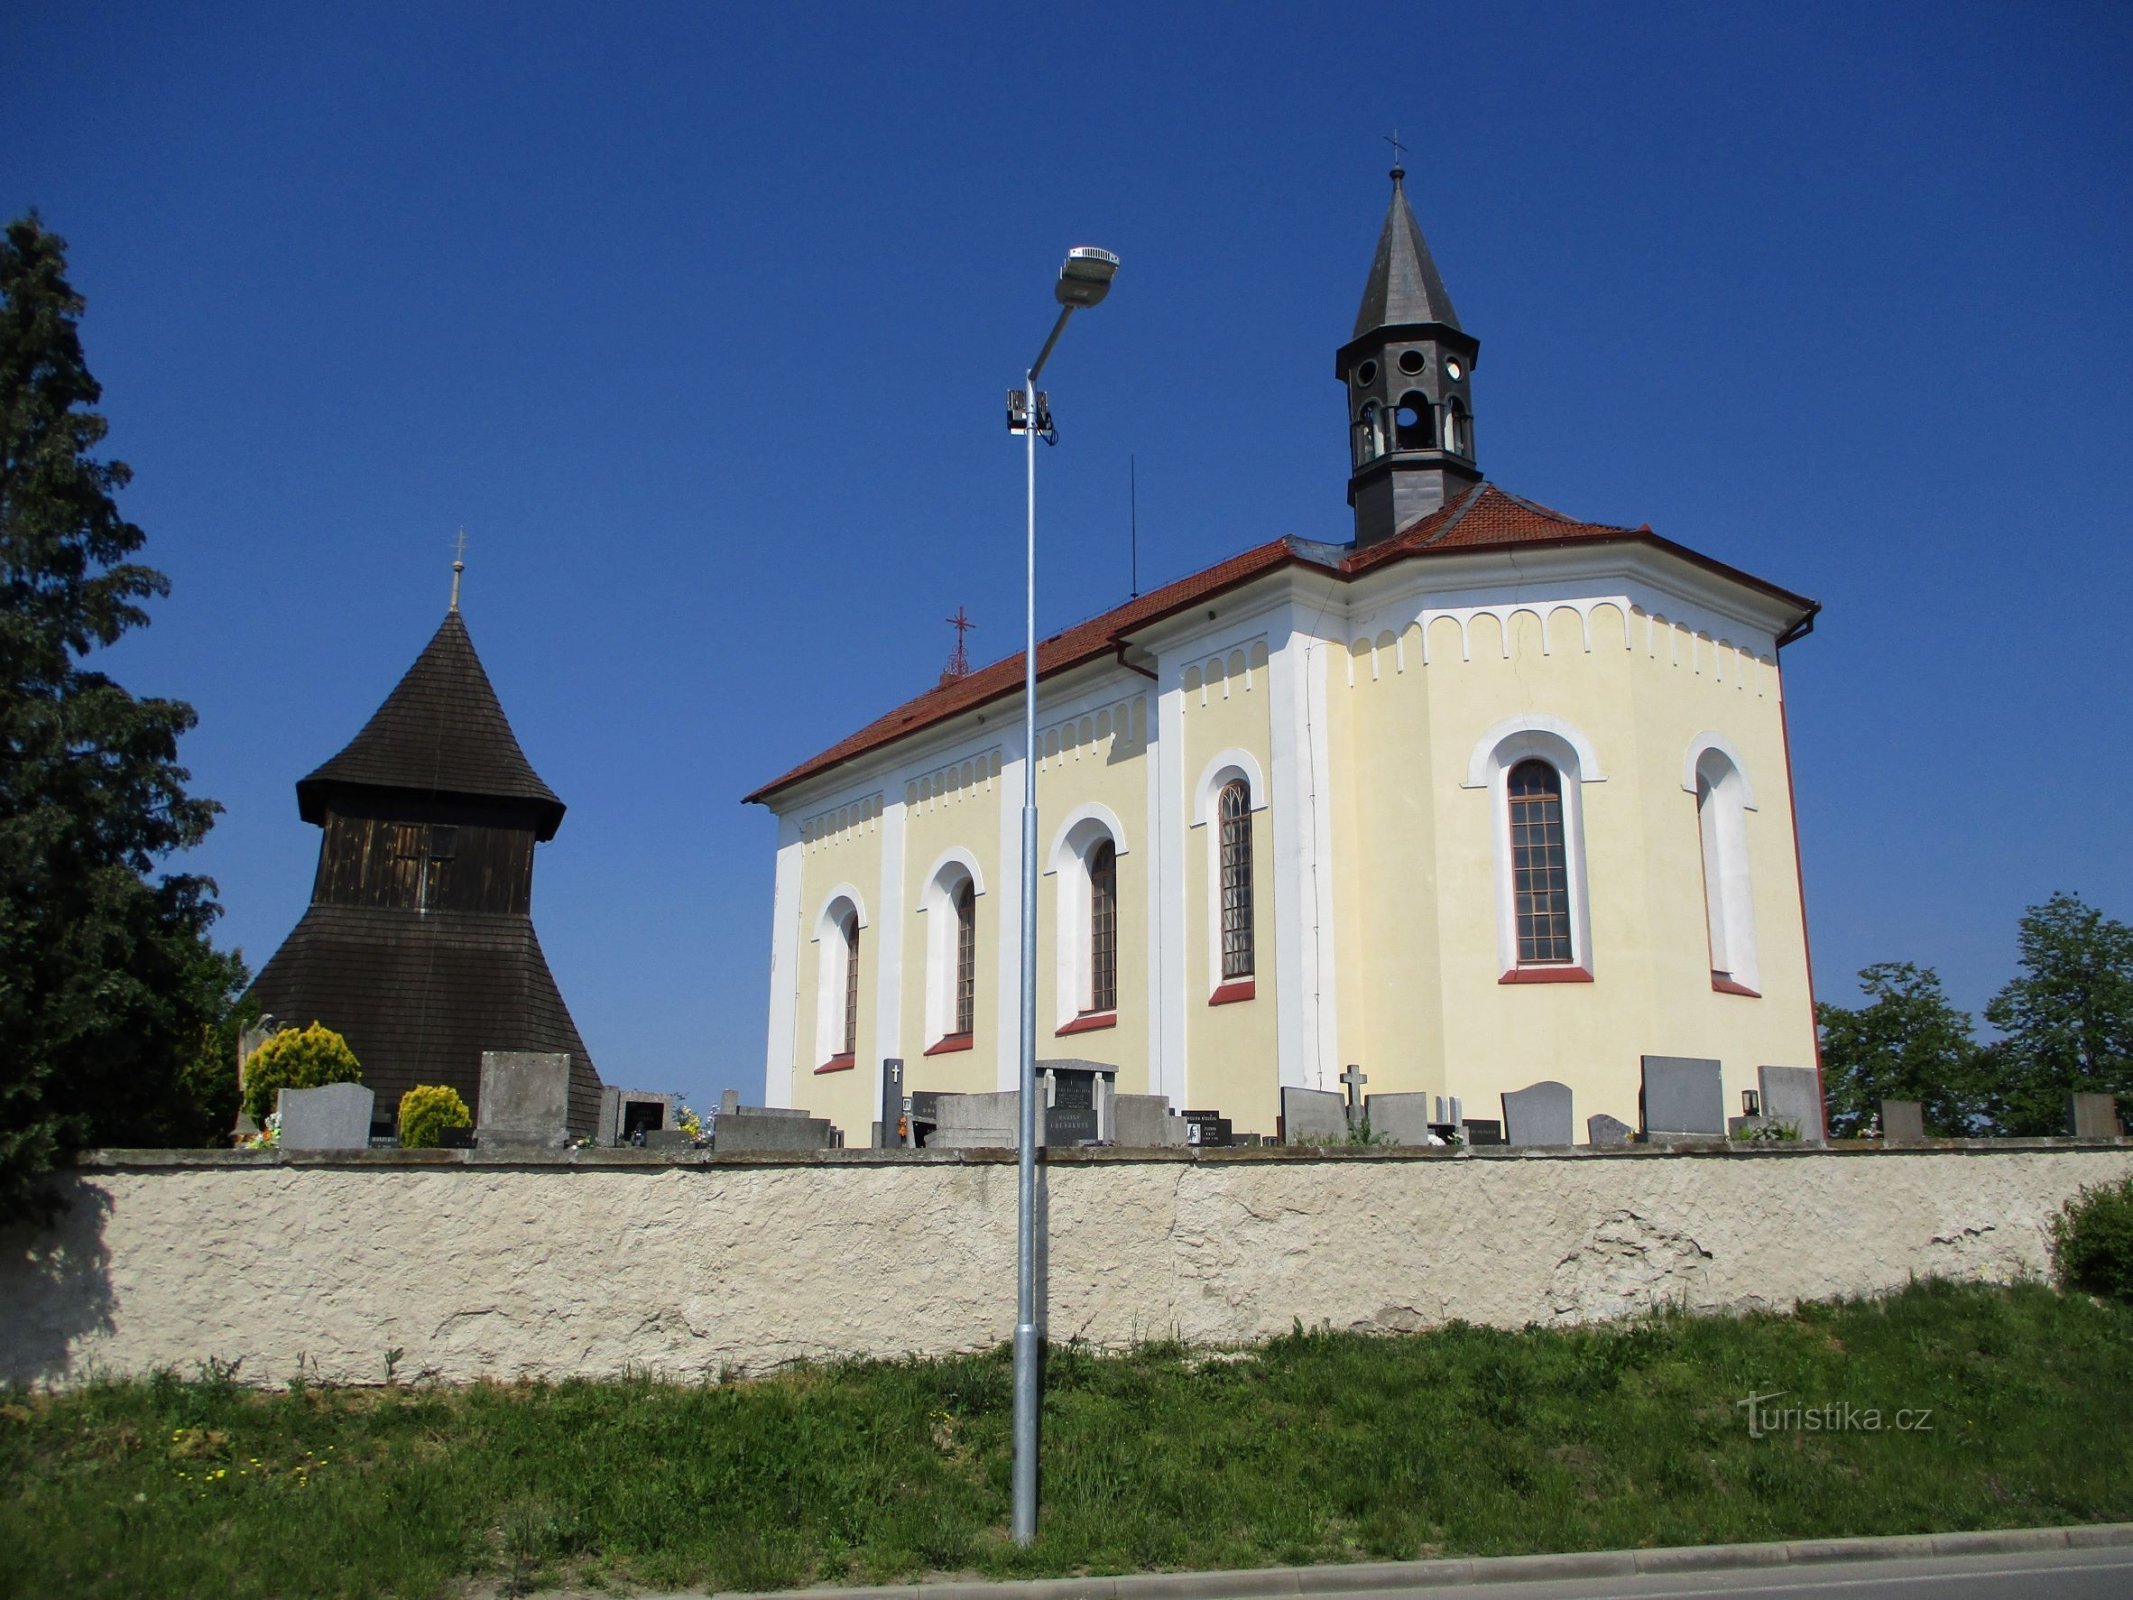 Tháp chuông và nhà thờ St. Wenceslas (Horní Ředice, 16.5.2020/XNUMX/XNUMX)